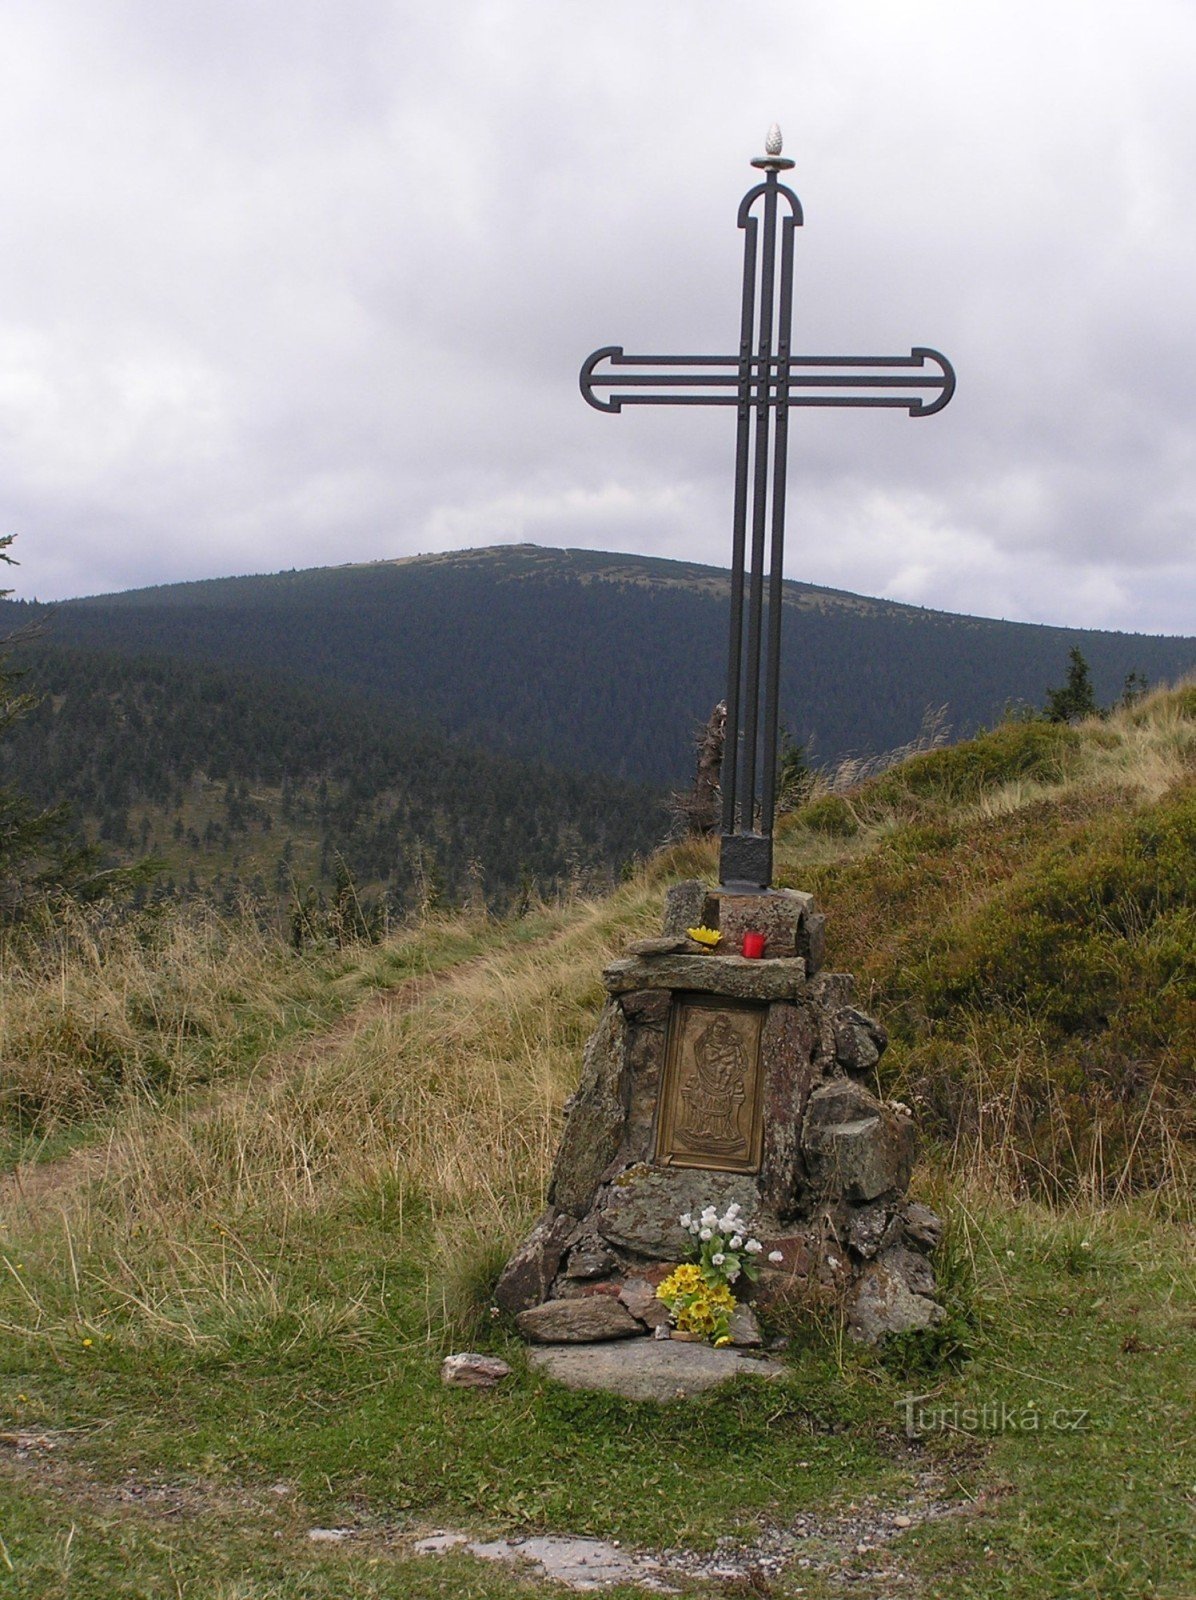 Het kruis bij Vřesová goed op de achtergrond met Keprník